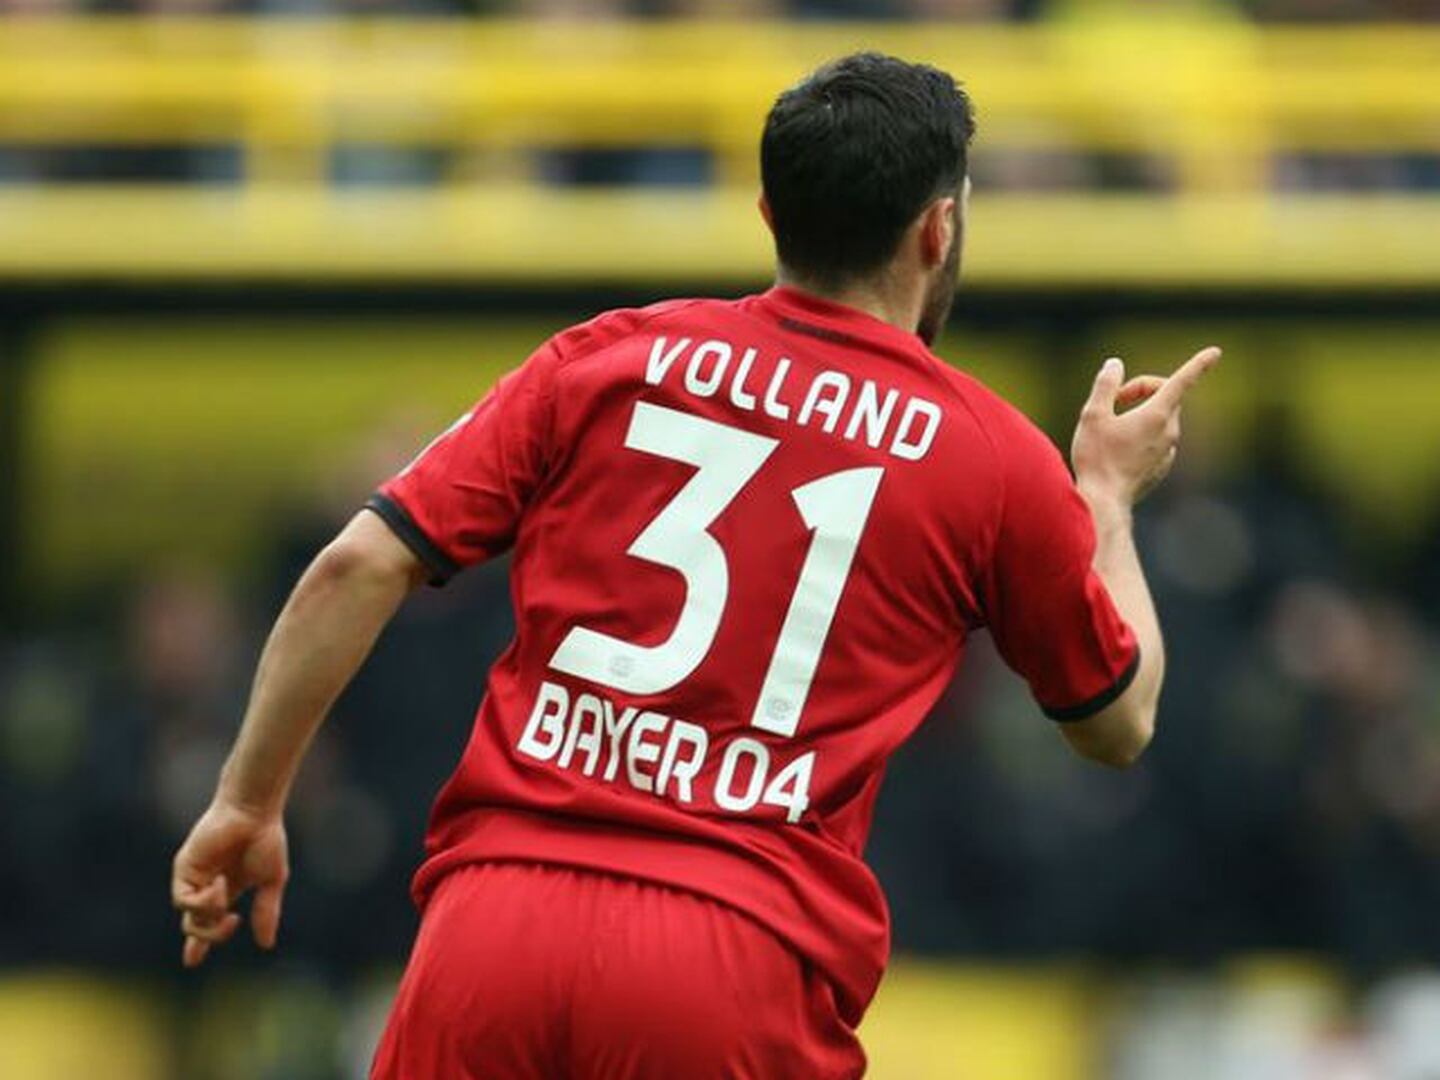 Volland le dio esperanza al Leverkusen